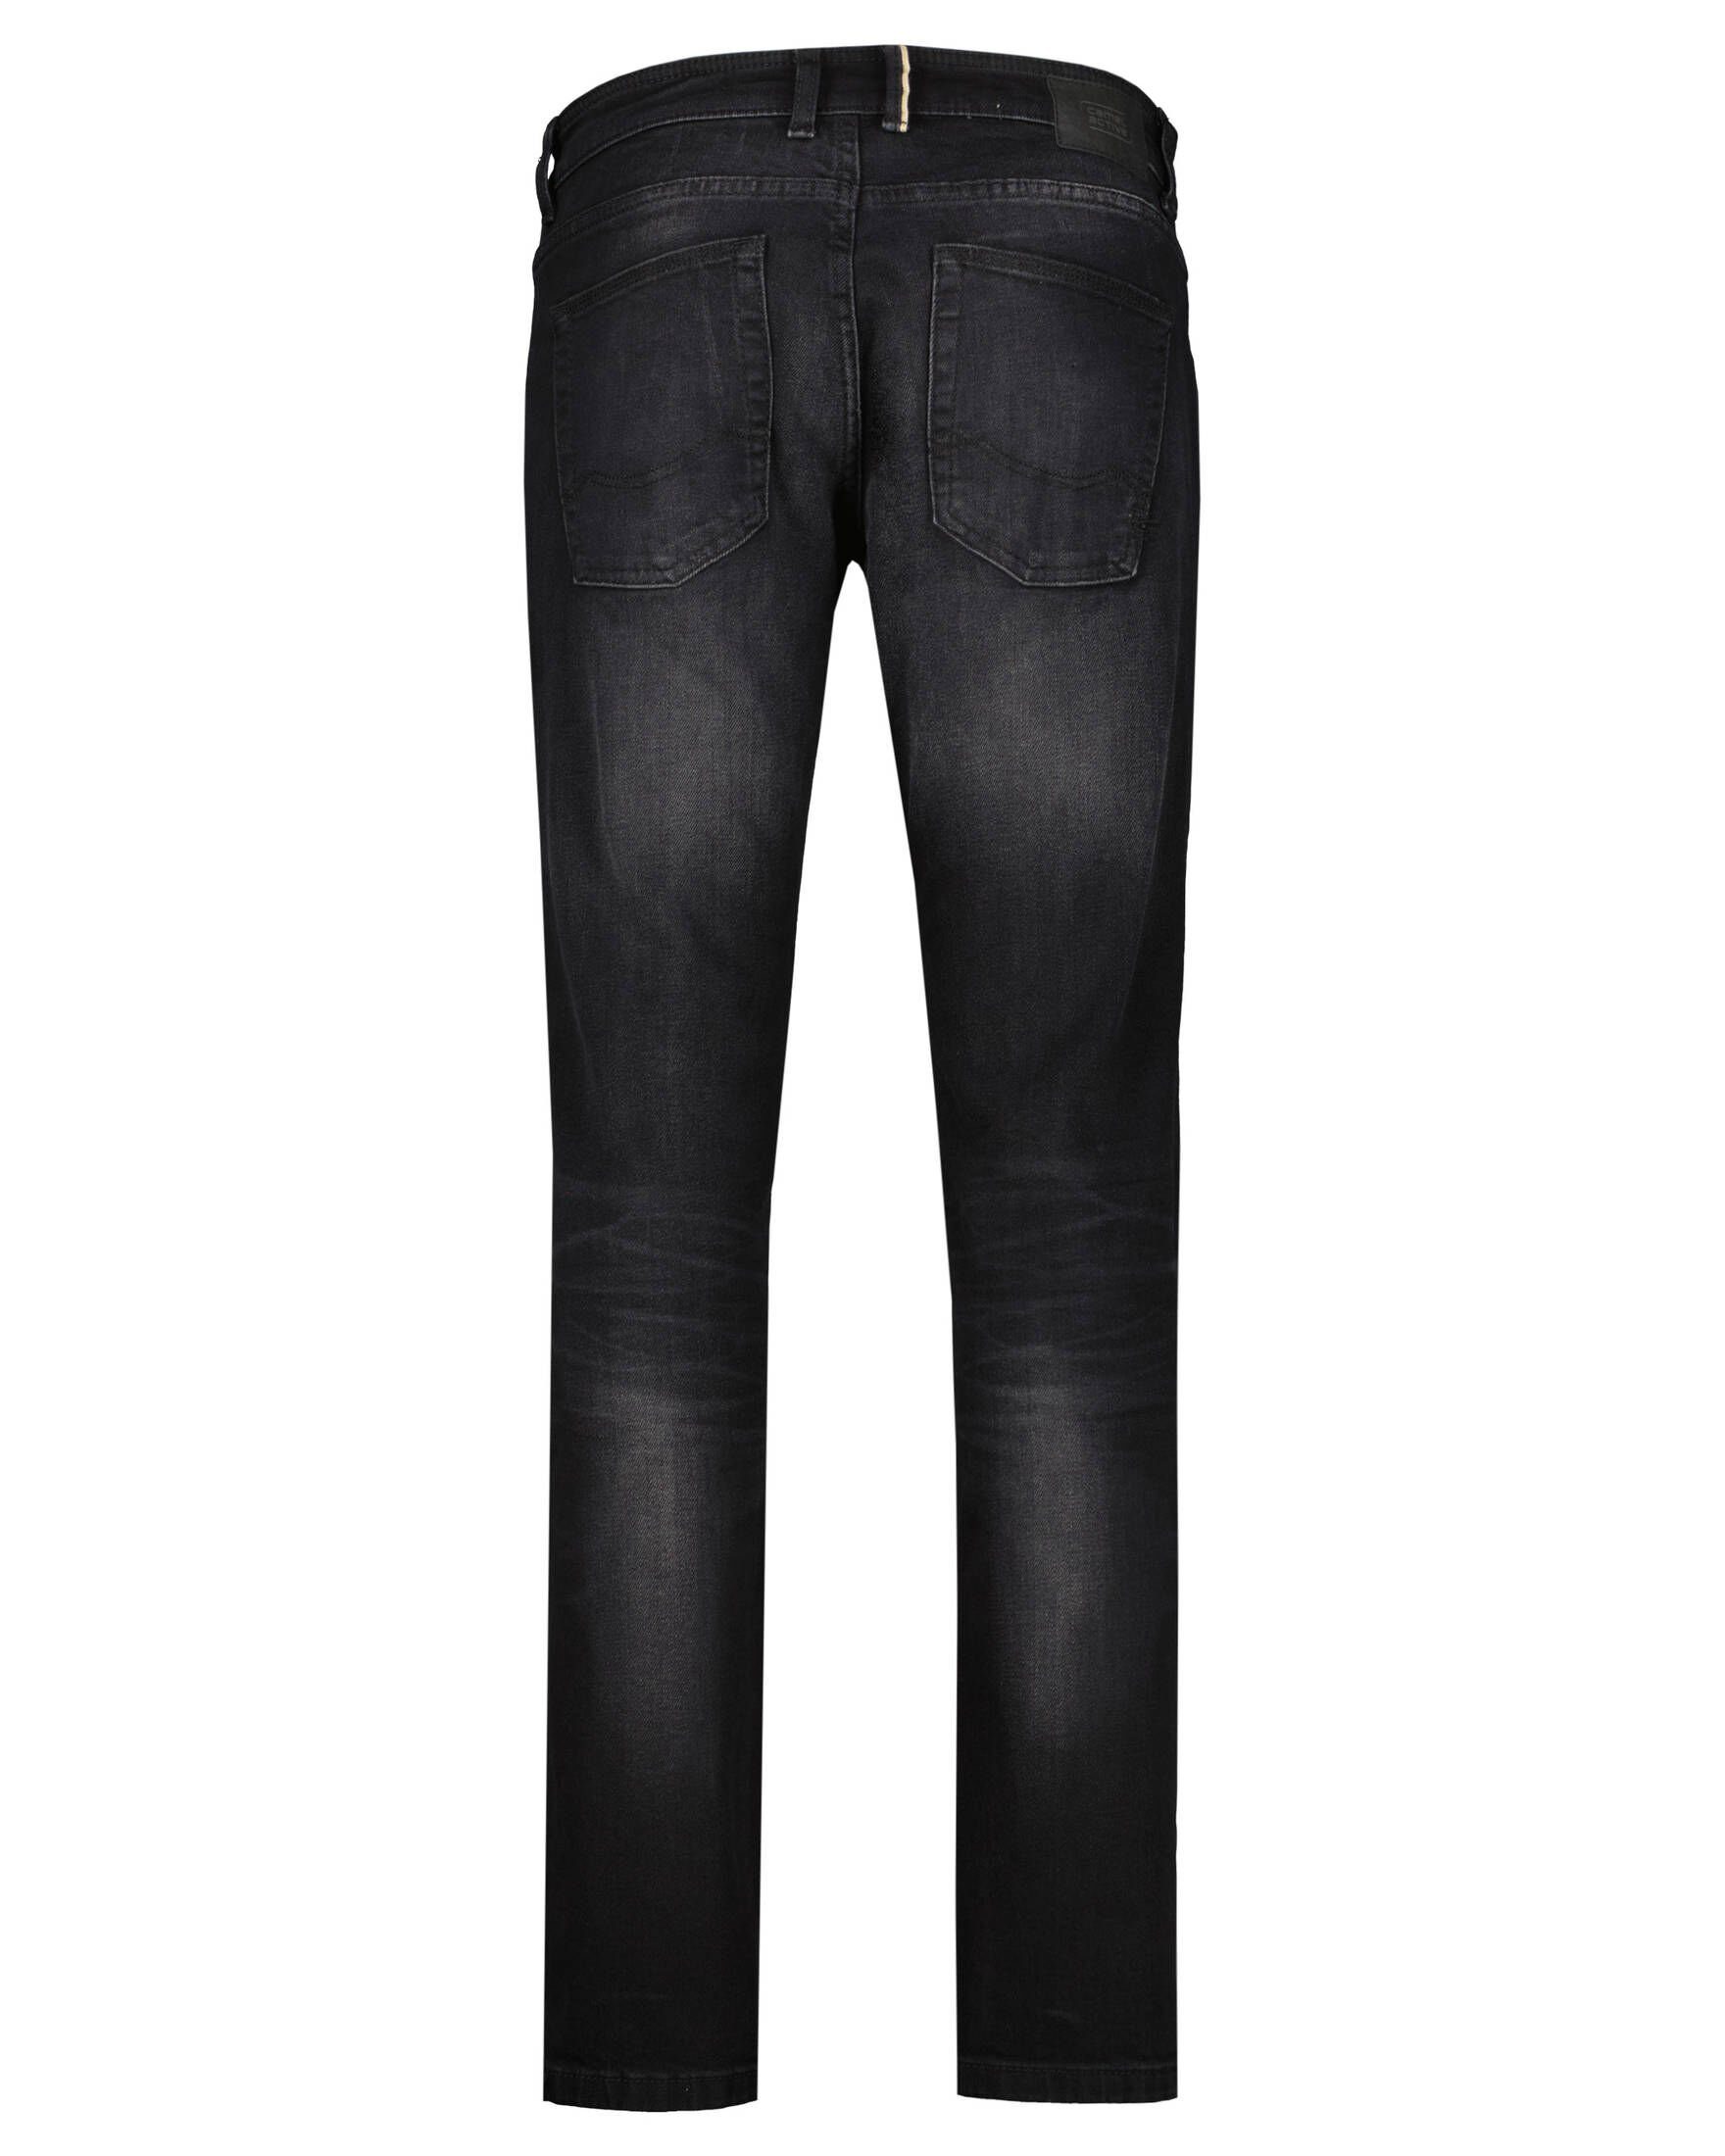 camel active 5-Pocket-Jeans Herren Jeans MADISON Slim Fit